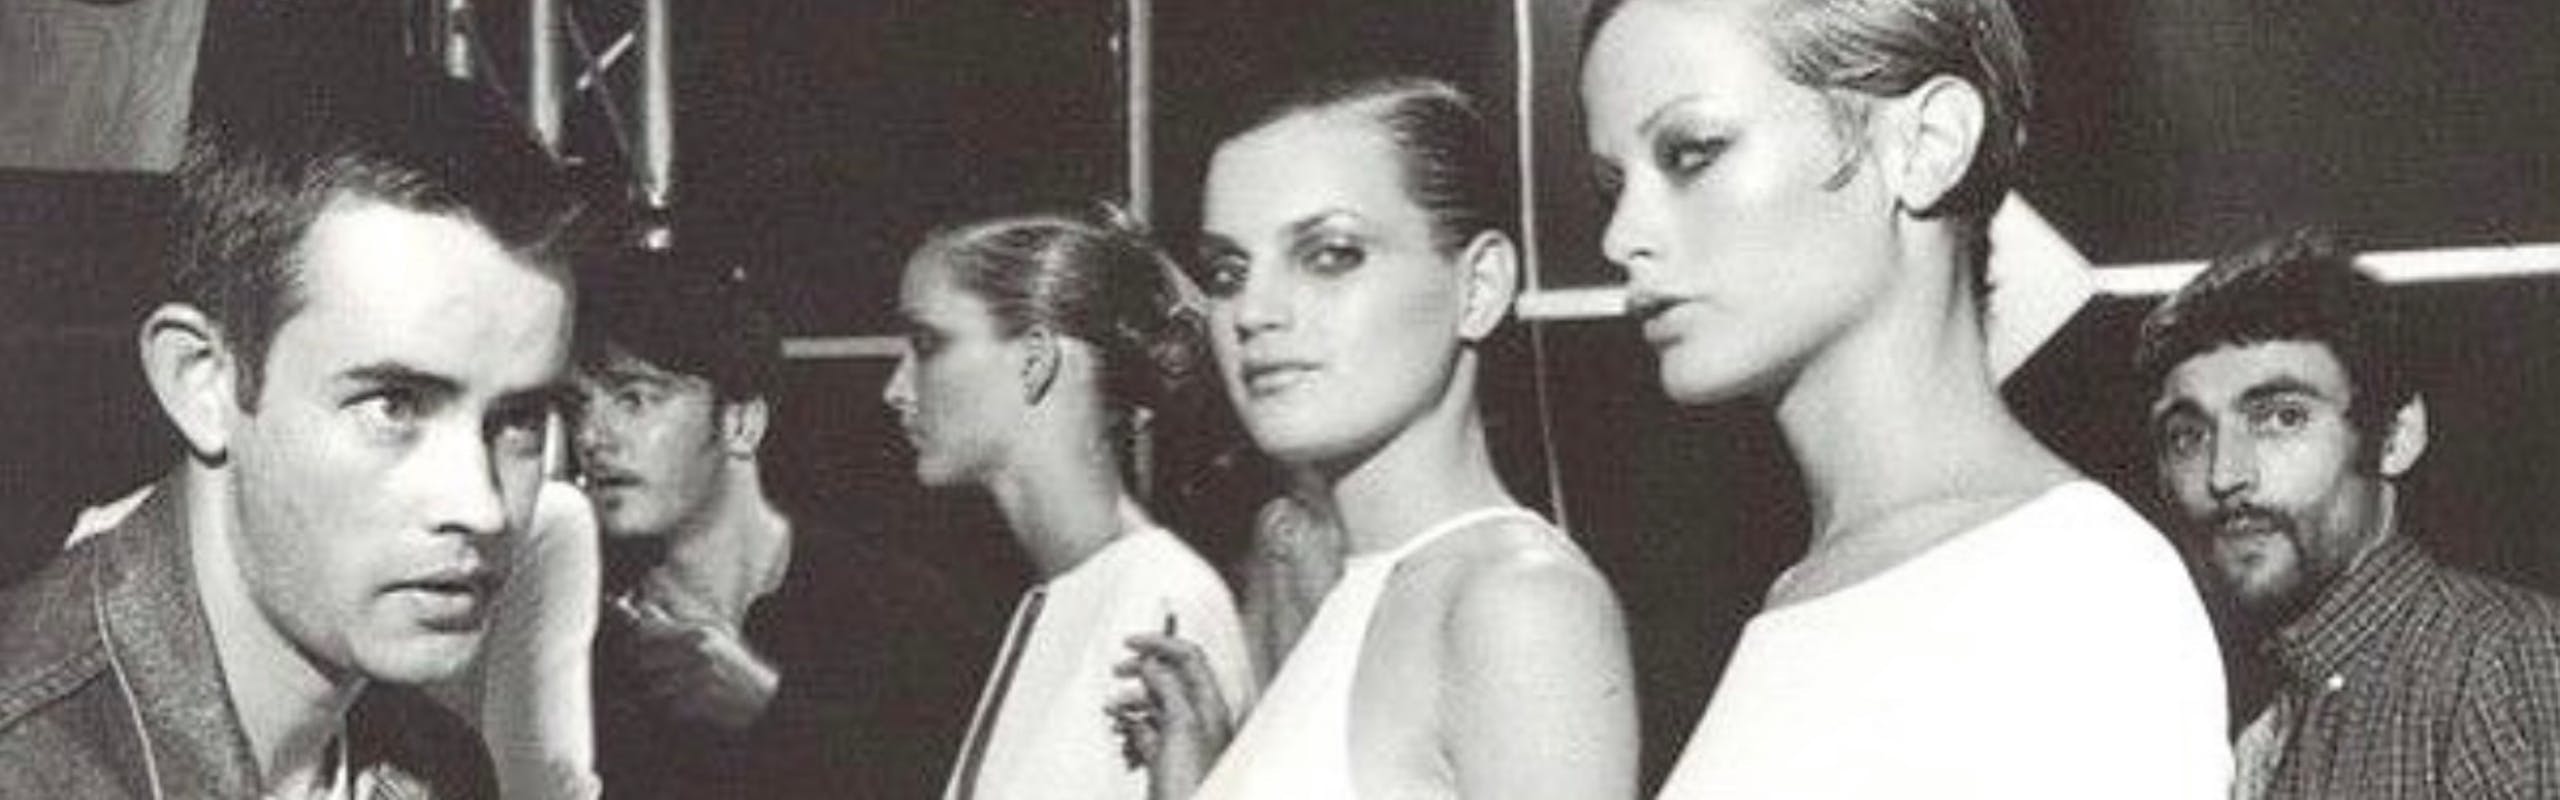 models backstage at tom ford 1996